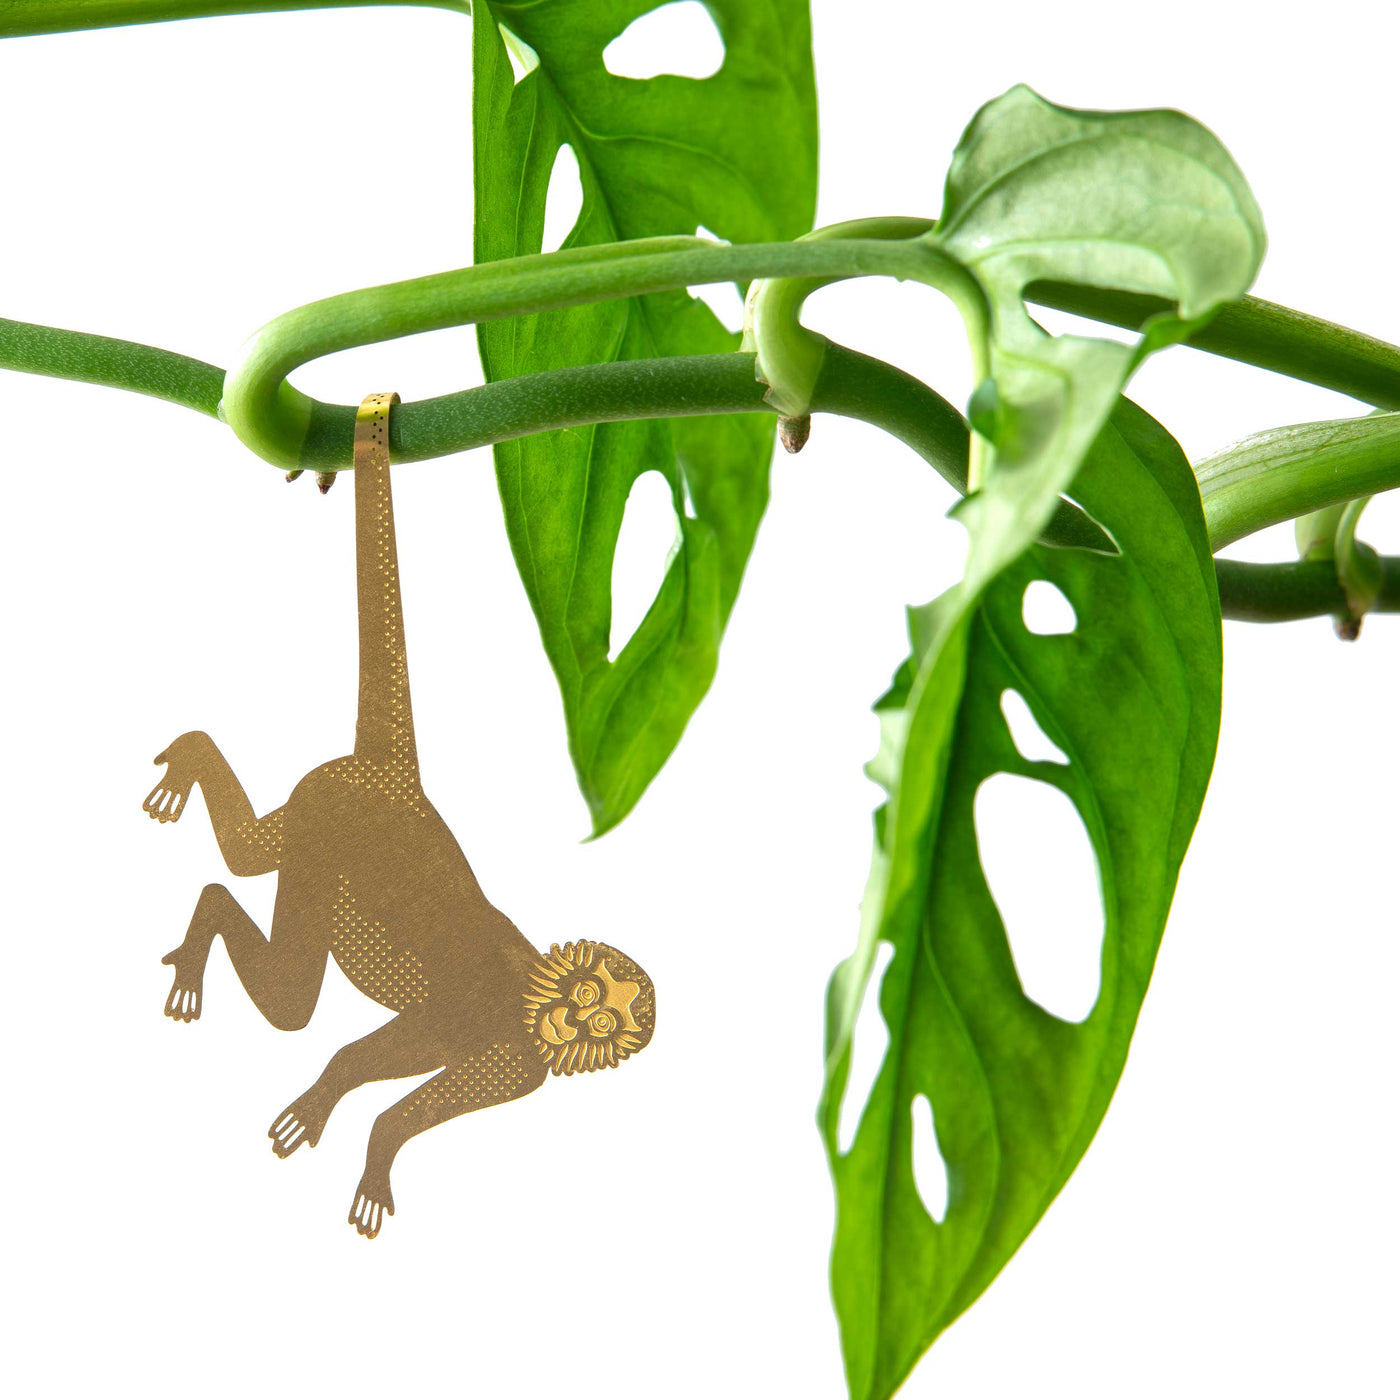 Spider Monkey - Plant Animal